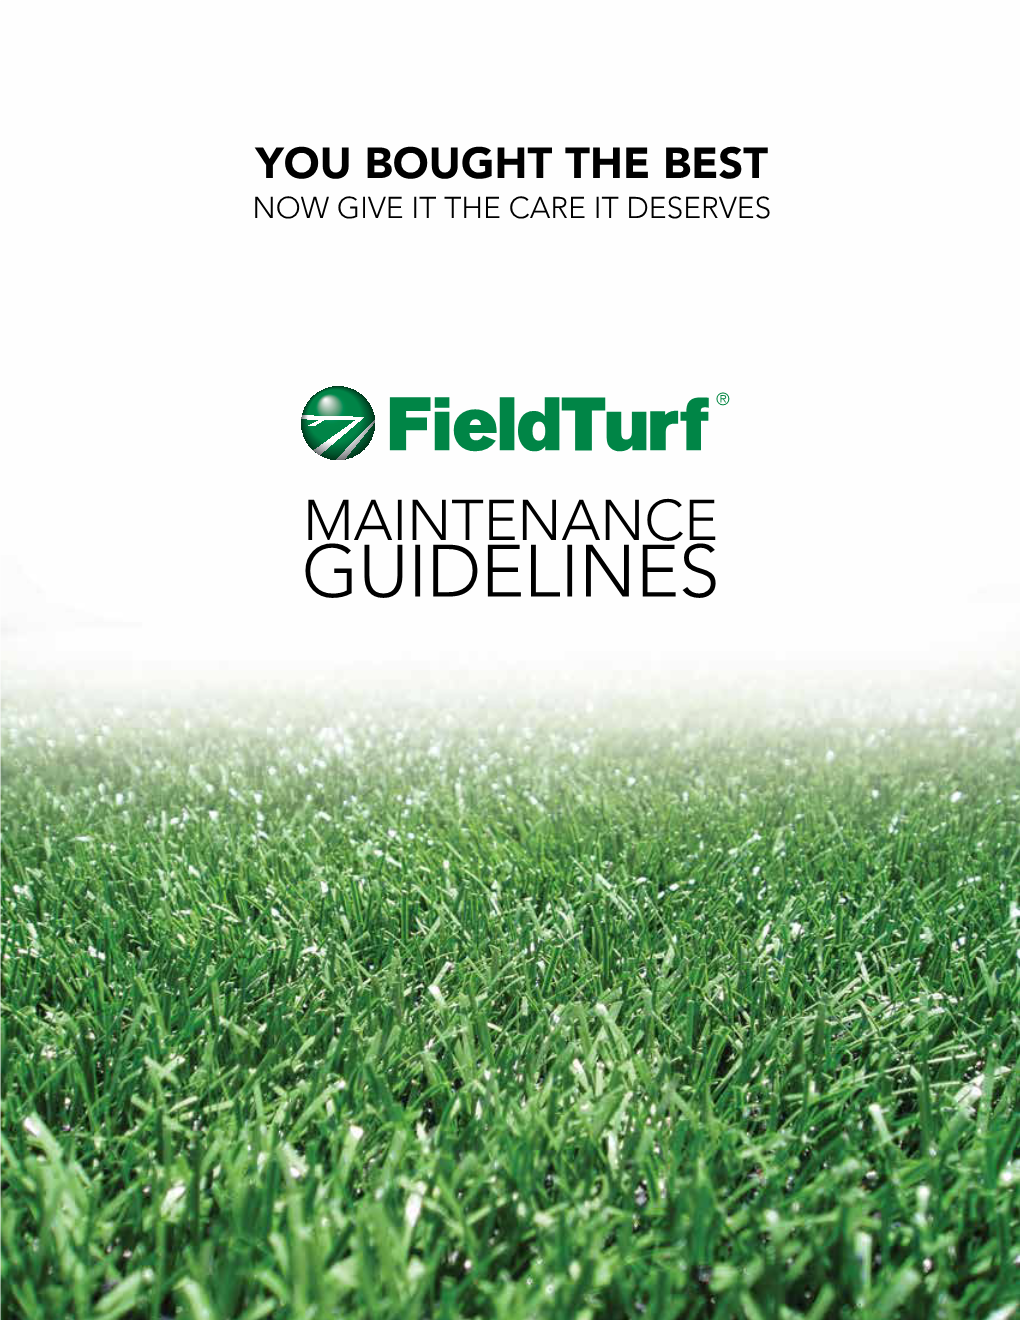 Maintenance Guidelines Fieldturf Maintenance Guidelines Fieldturf Maintenance Guidelines